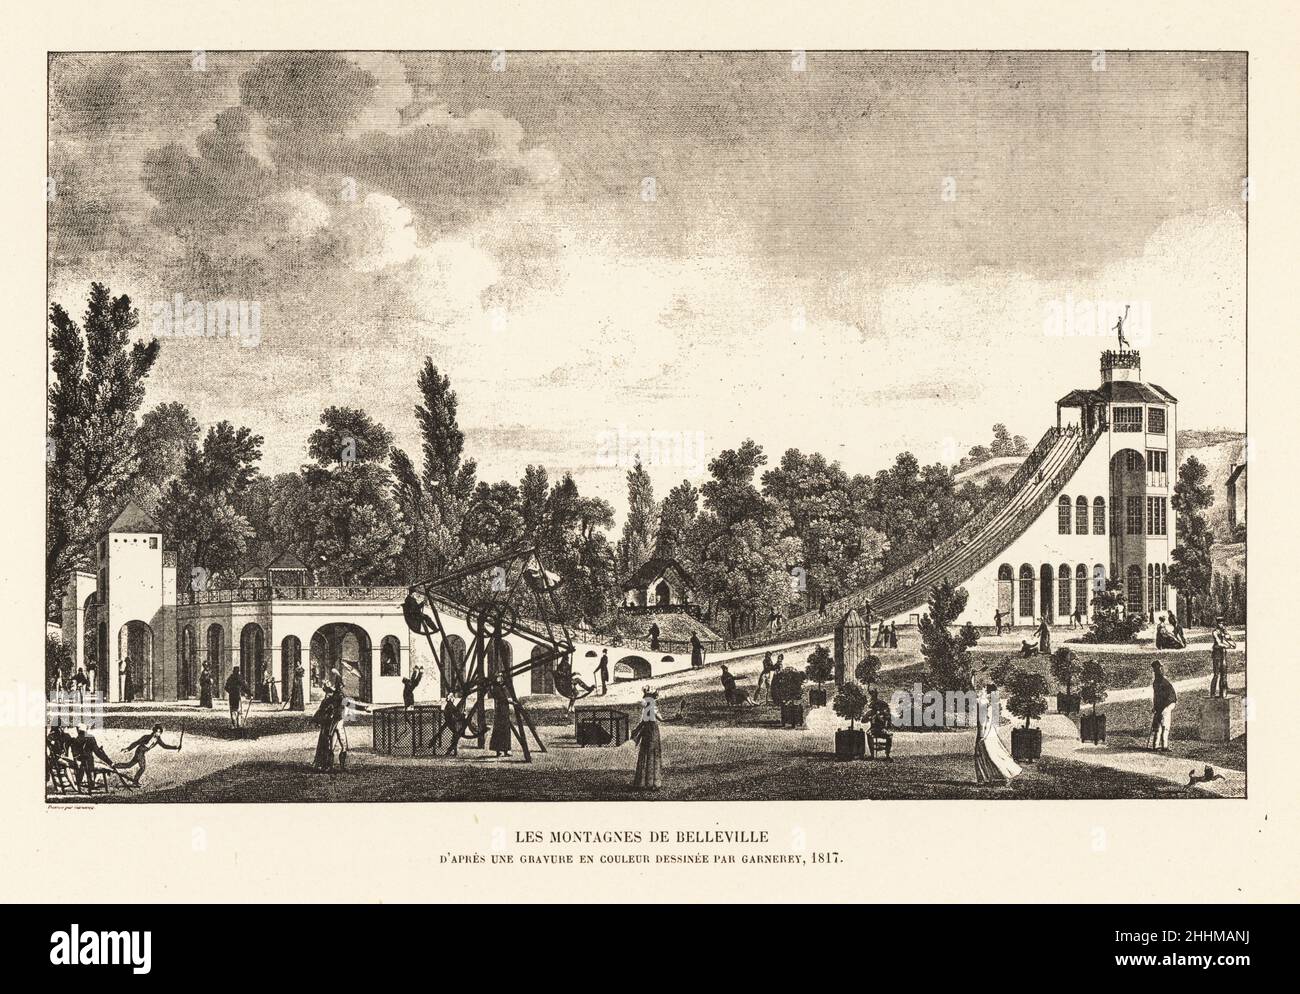 Litografía de 1817 fotografías e imágenes de alta resolución - Alamy